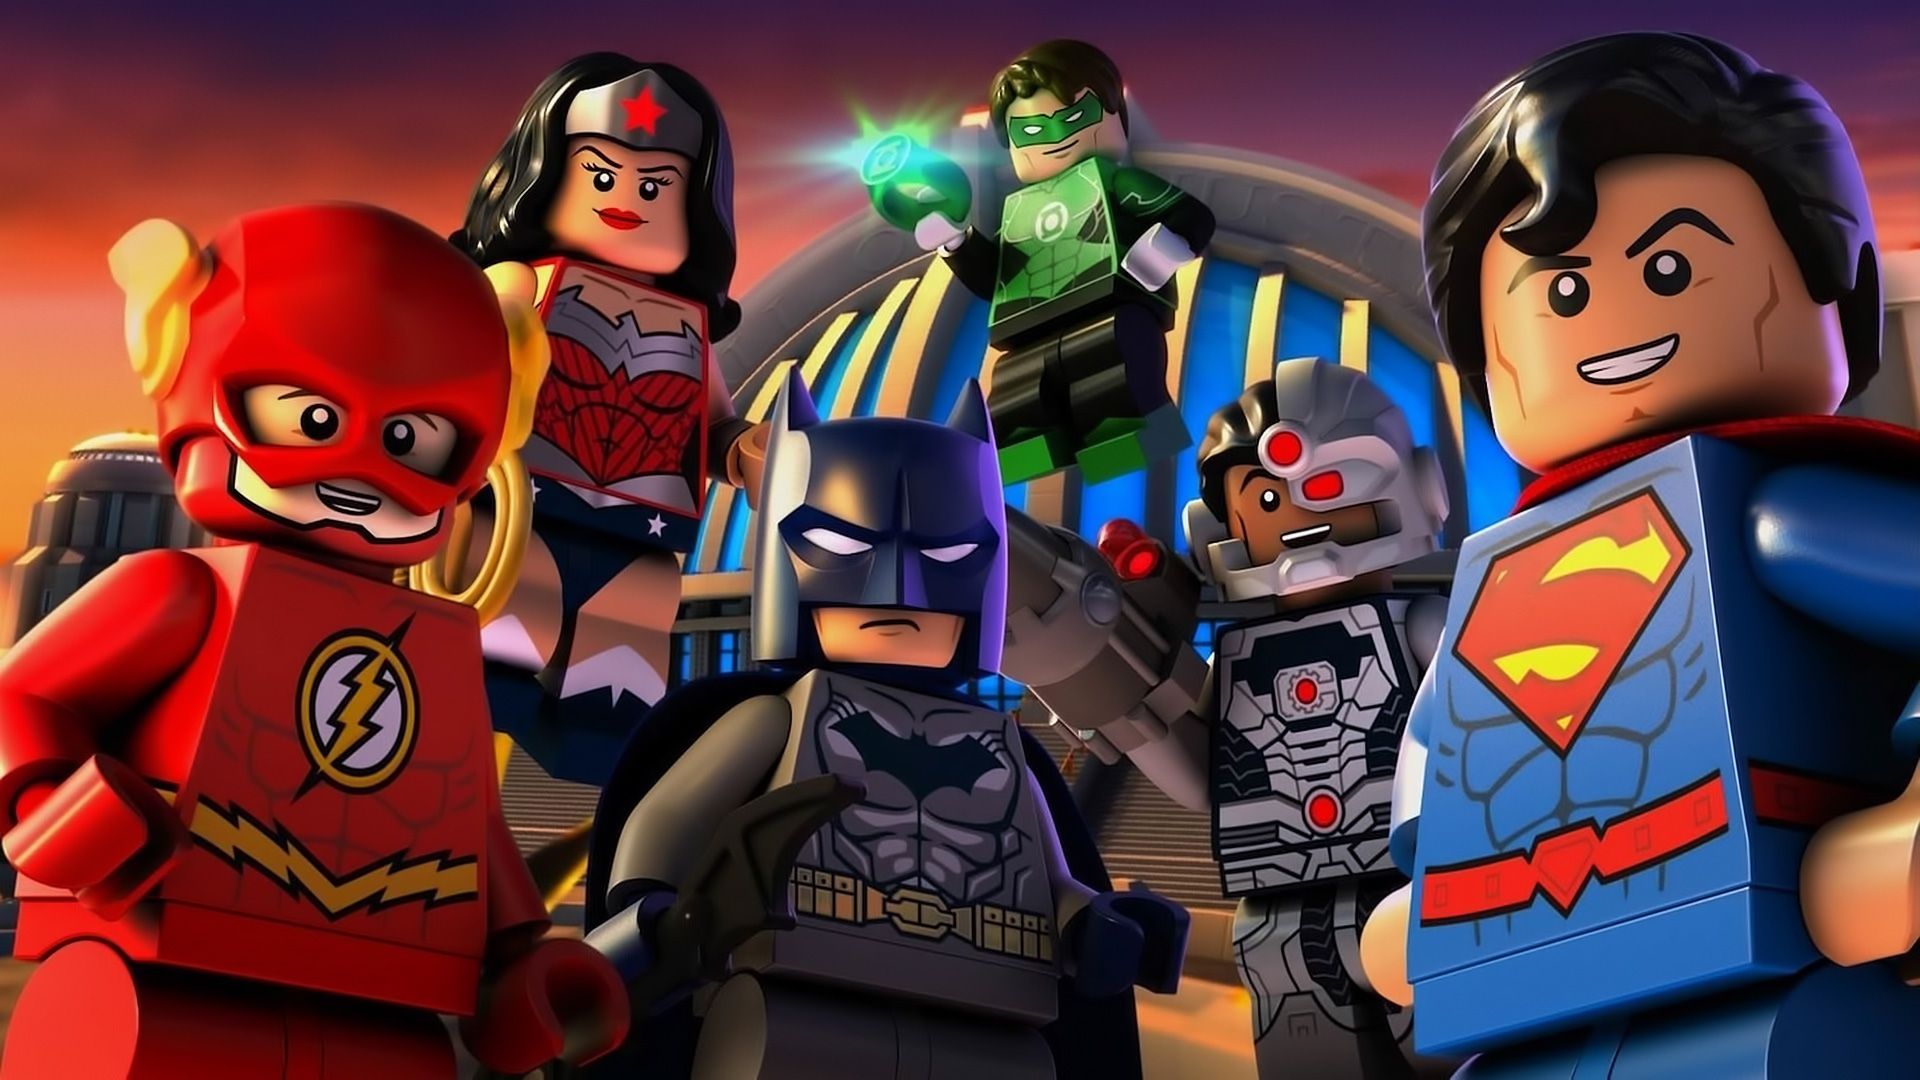 Lego DC Comics Super Heroes: Justice League - Cosmic Clash Backdrop